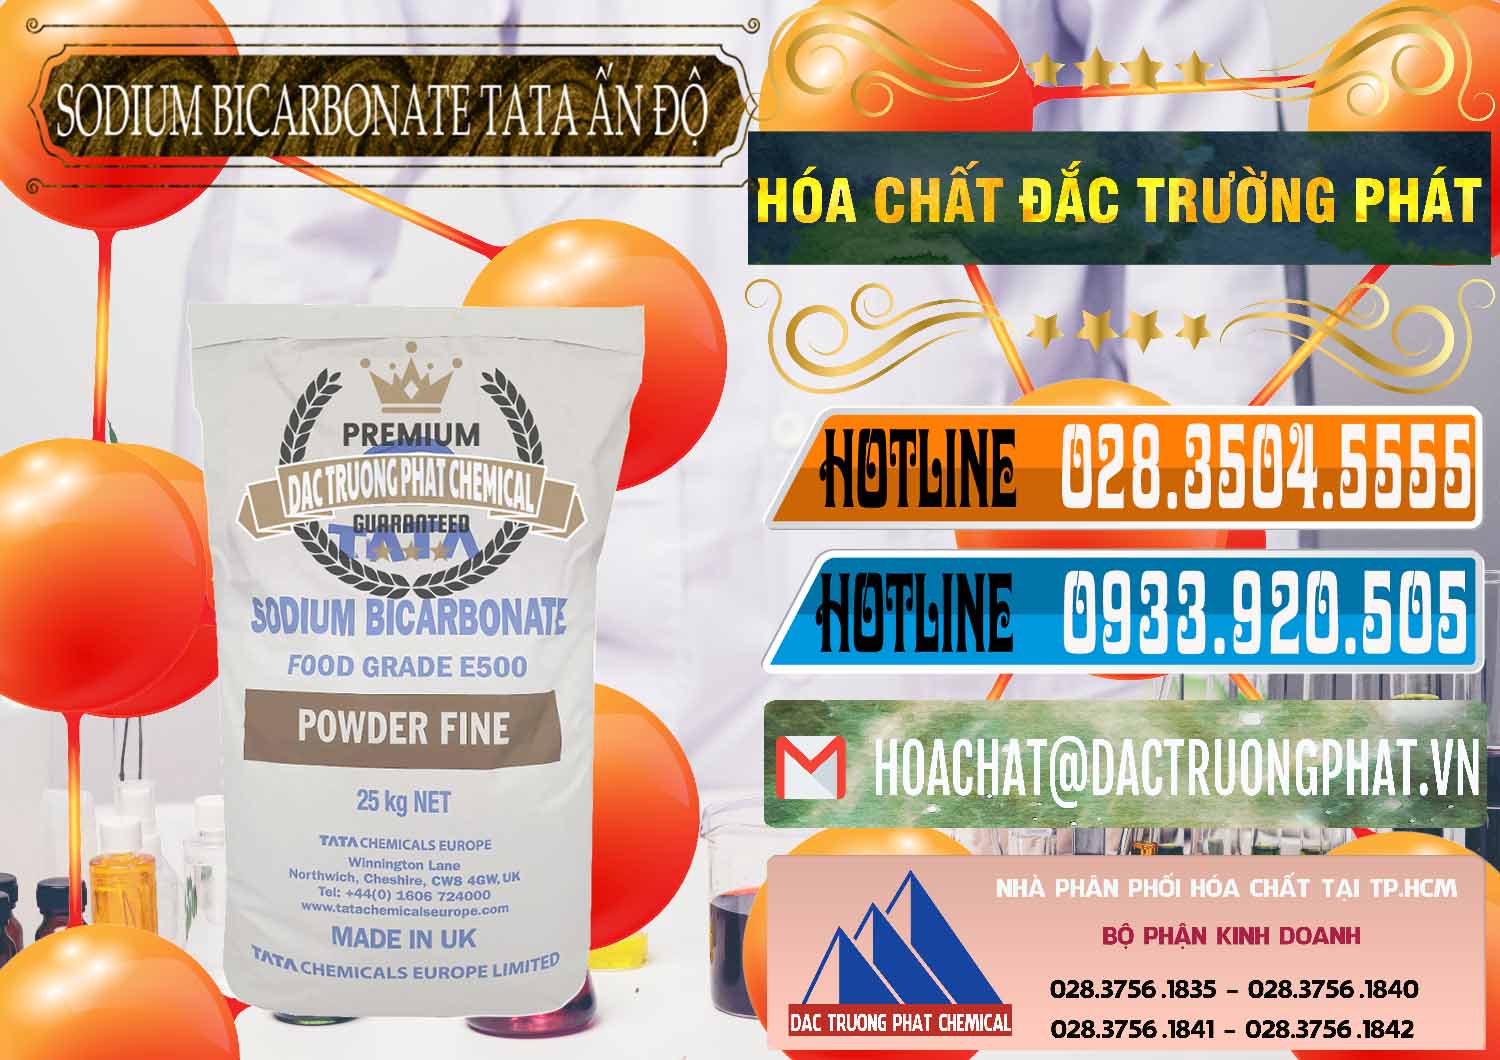 Đơn vị bán ( cung cấp ) Sodium Bicarbonate – Bicar NaHCO3 E500 Thực Phẩm Food Grade Tata Ấn Độ India - 0261 - Công ty bán _ phân phối hóa chất tại TP.HCM - stmp.net